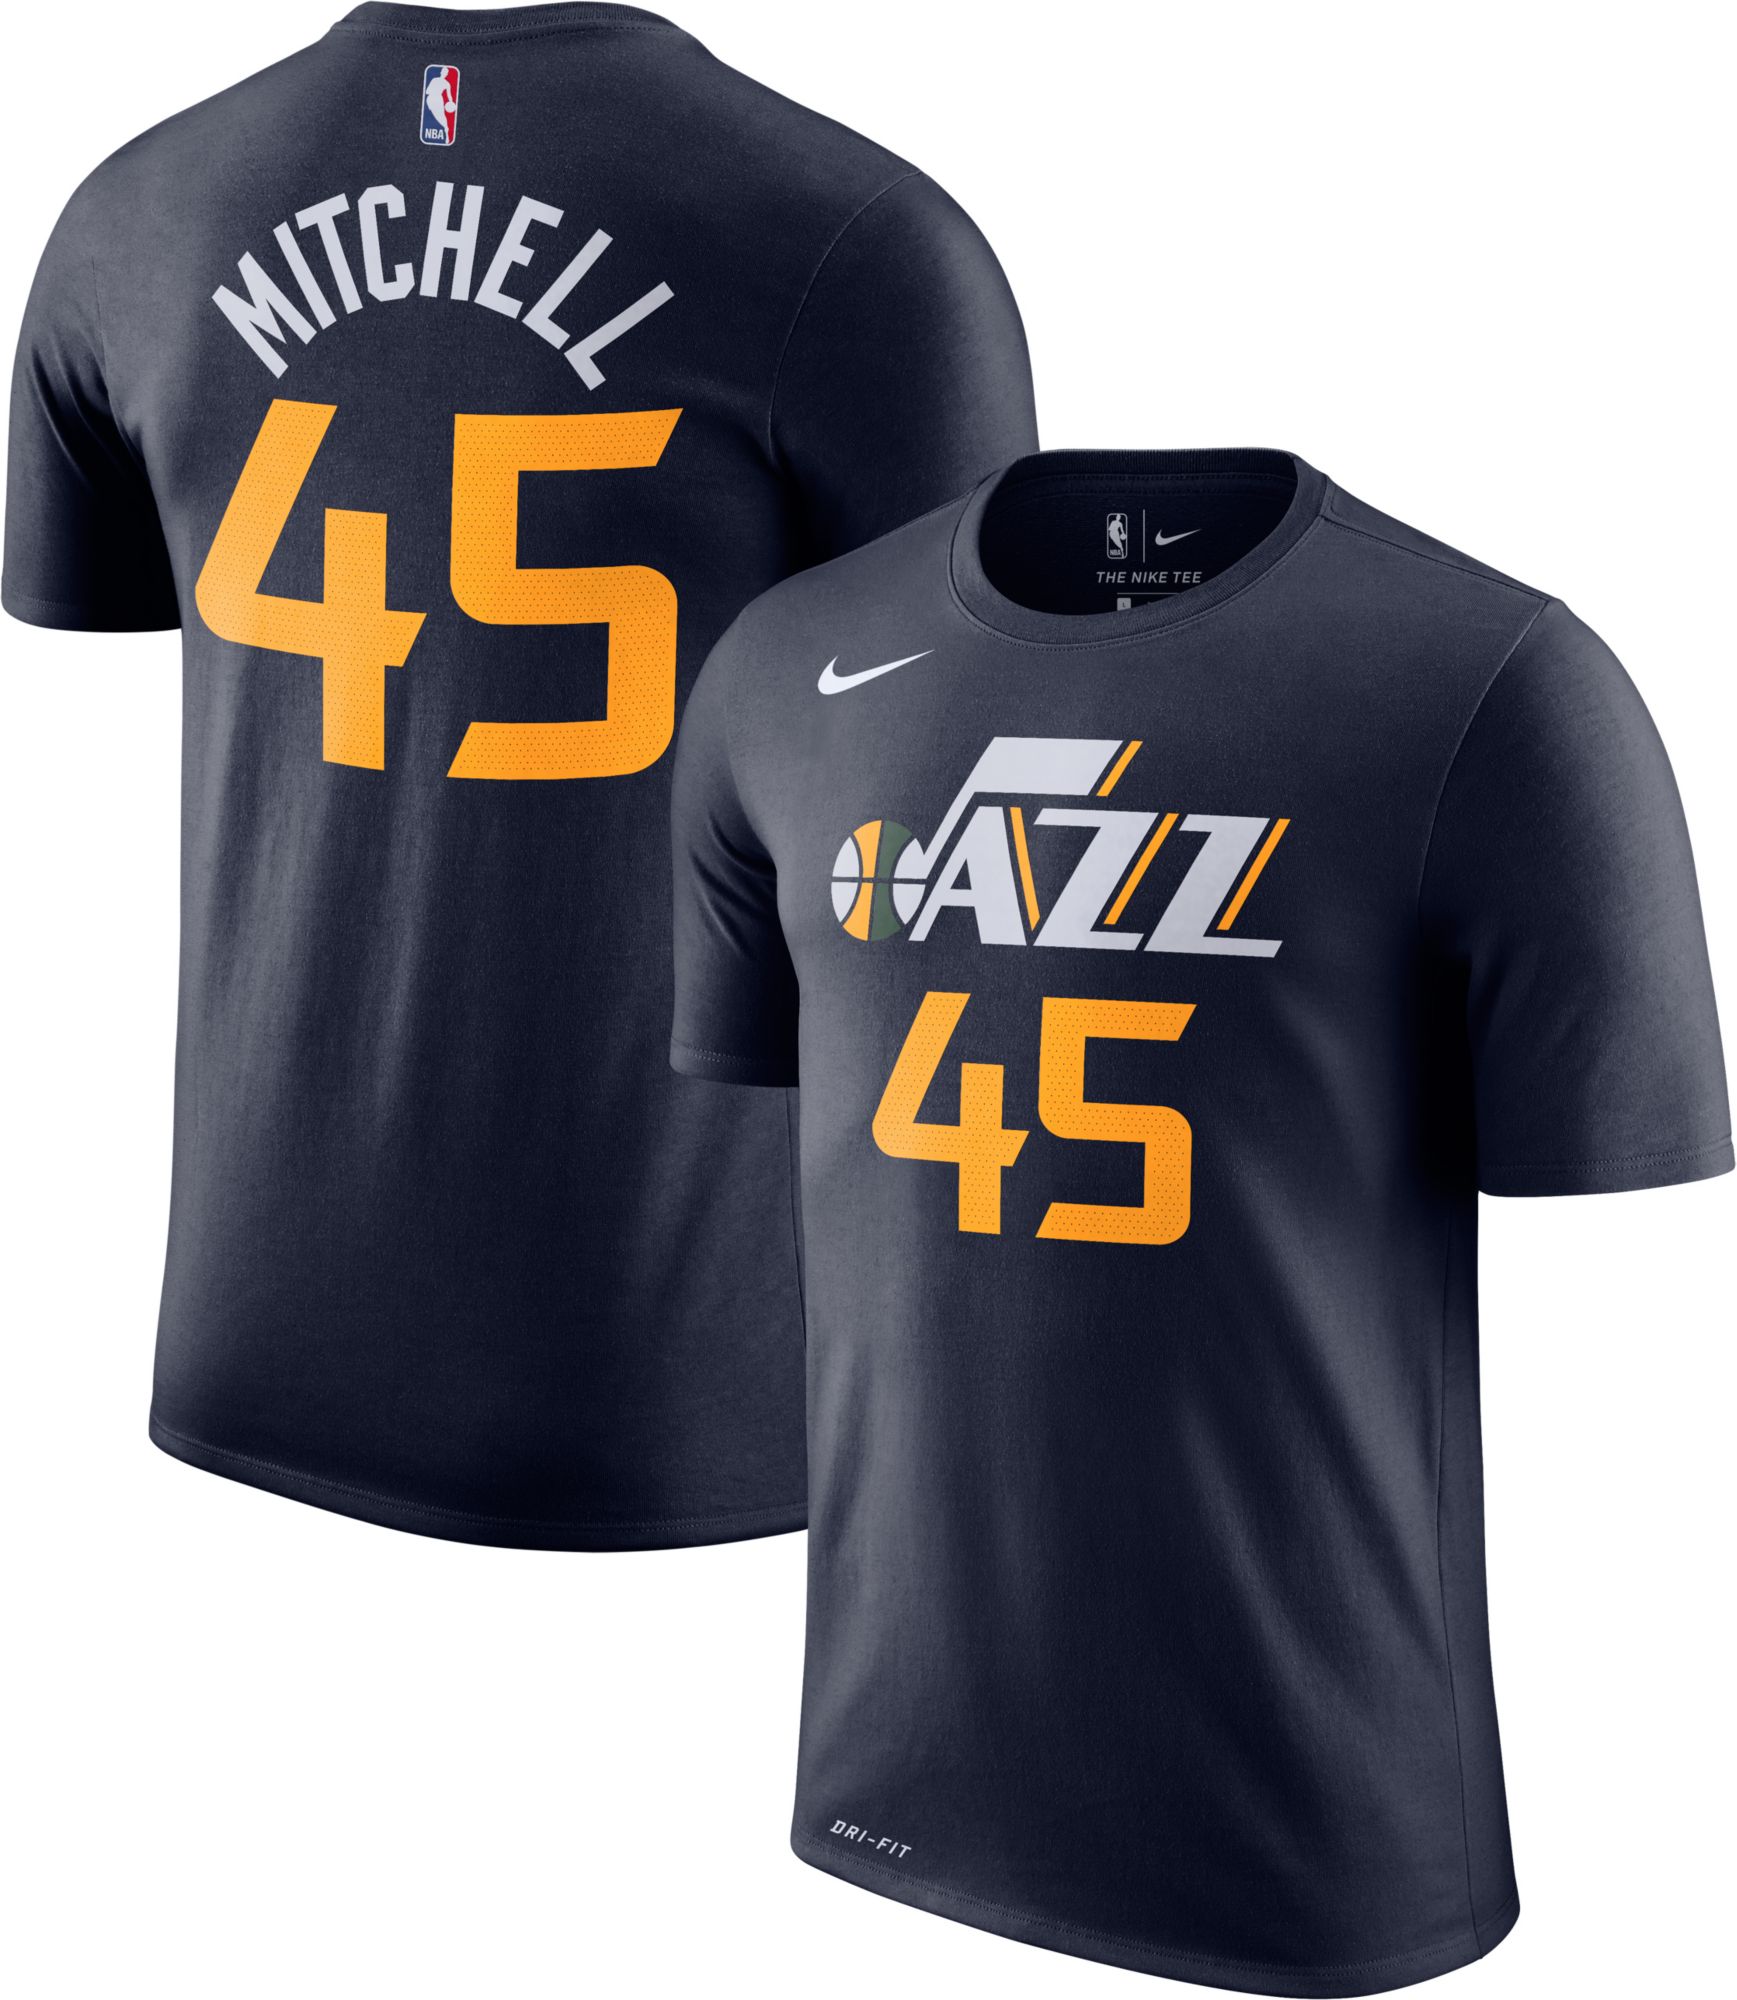 Nike Men's Utah Jazz Donovan Mitchell 